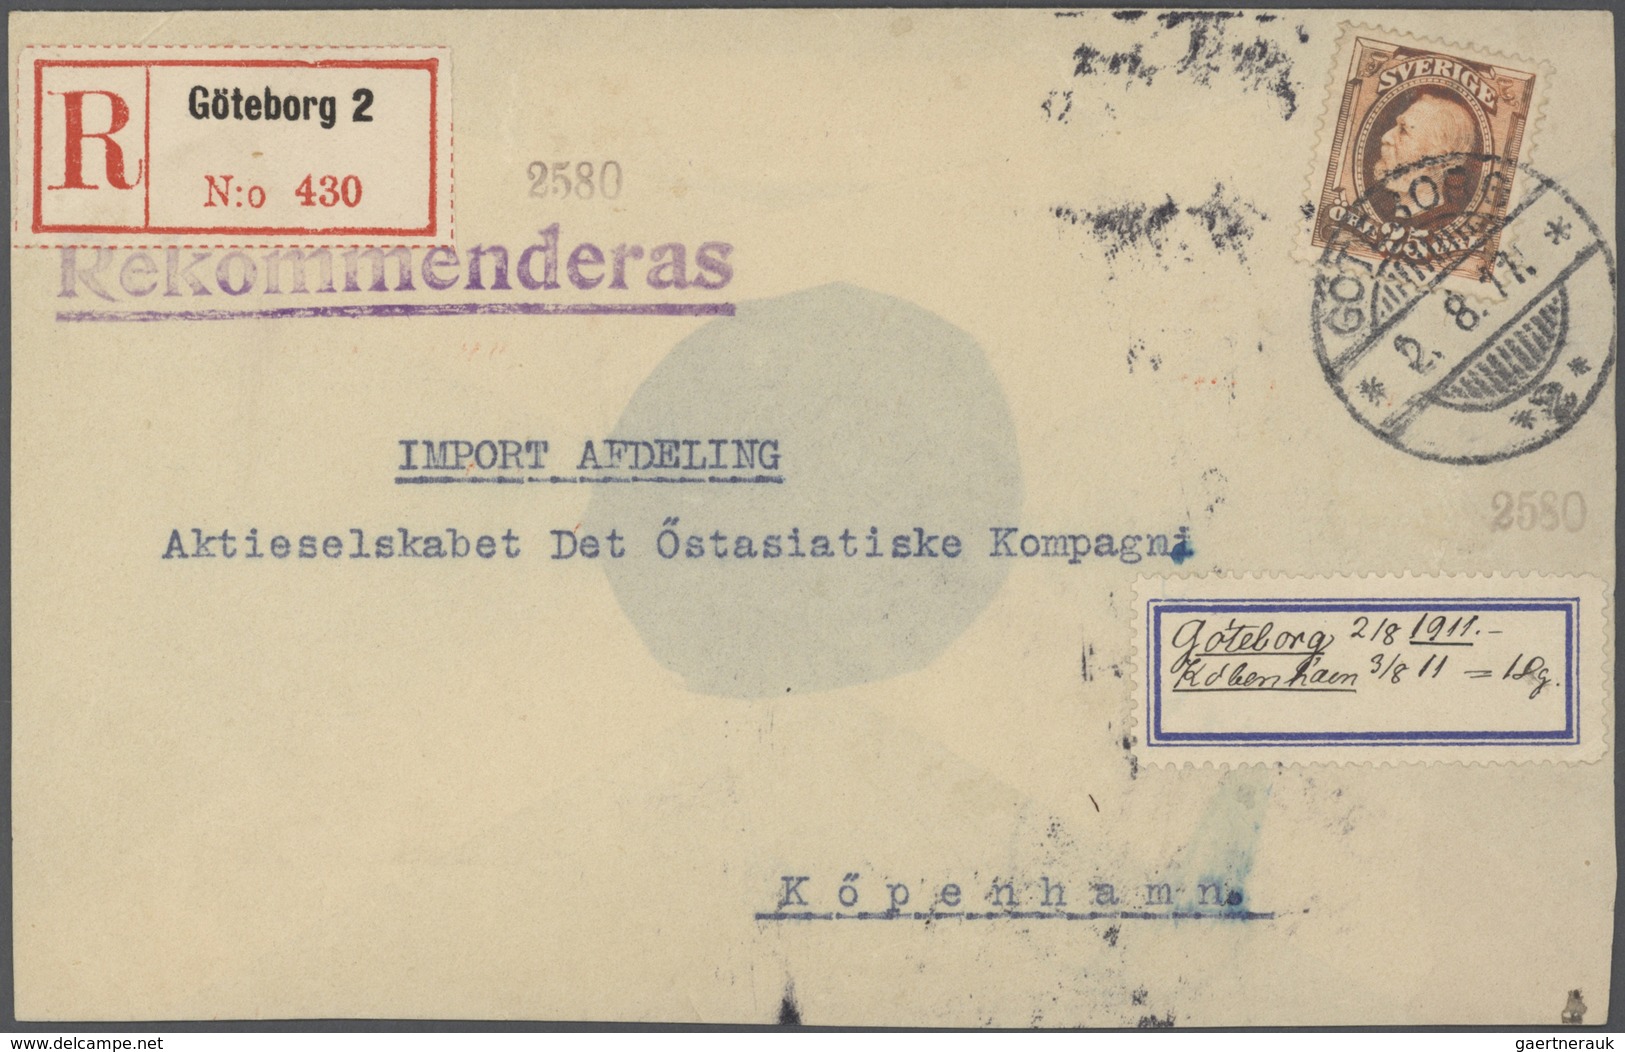 27966 Schweden: 1850/1960 (ca) ungefähr 460 Belege - größtenteils Bedarf, viele Briefe, Formulare, ... ab